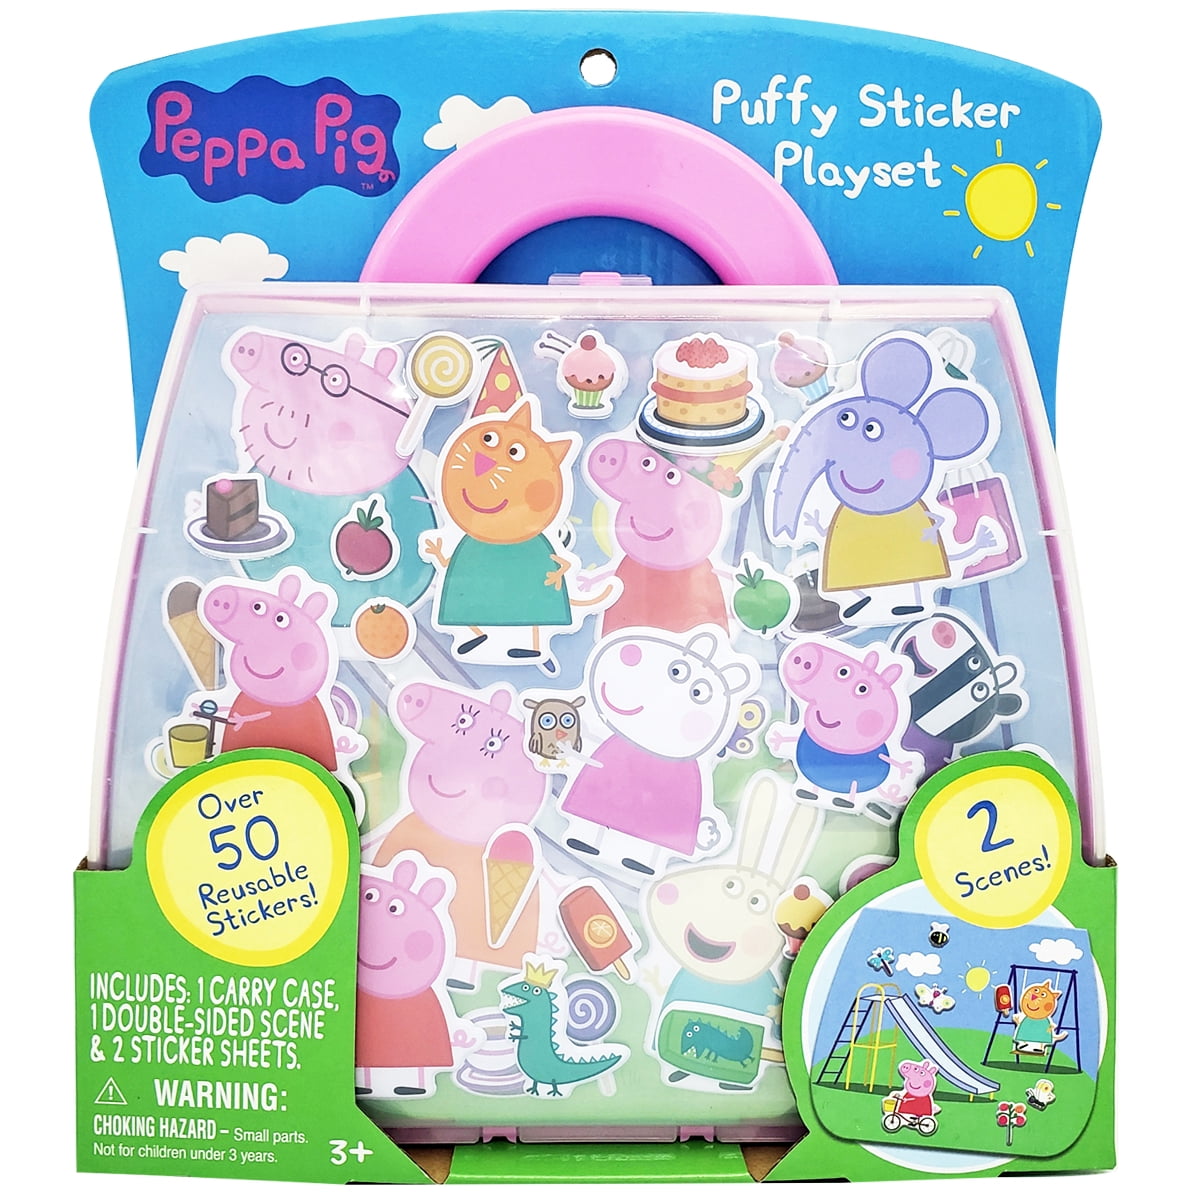 3D Lenticular Sticker Pack Official Peppa Pig Sticker Pack